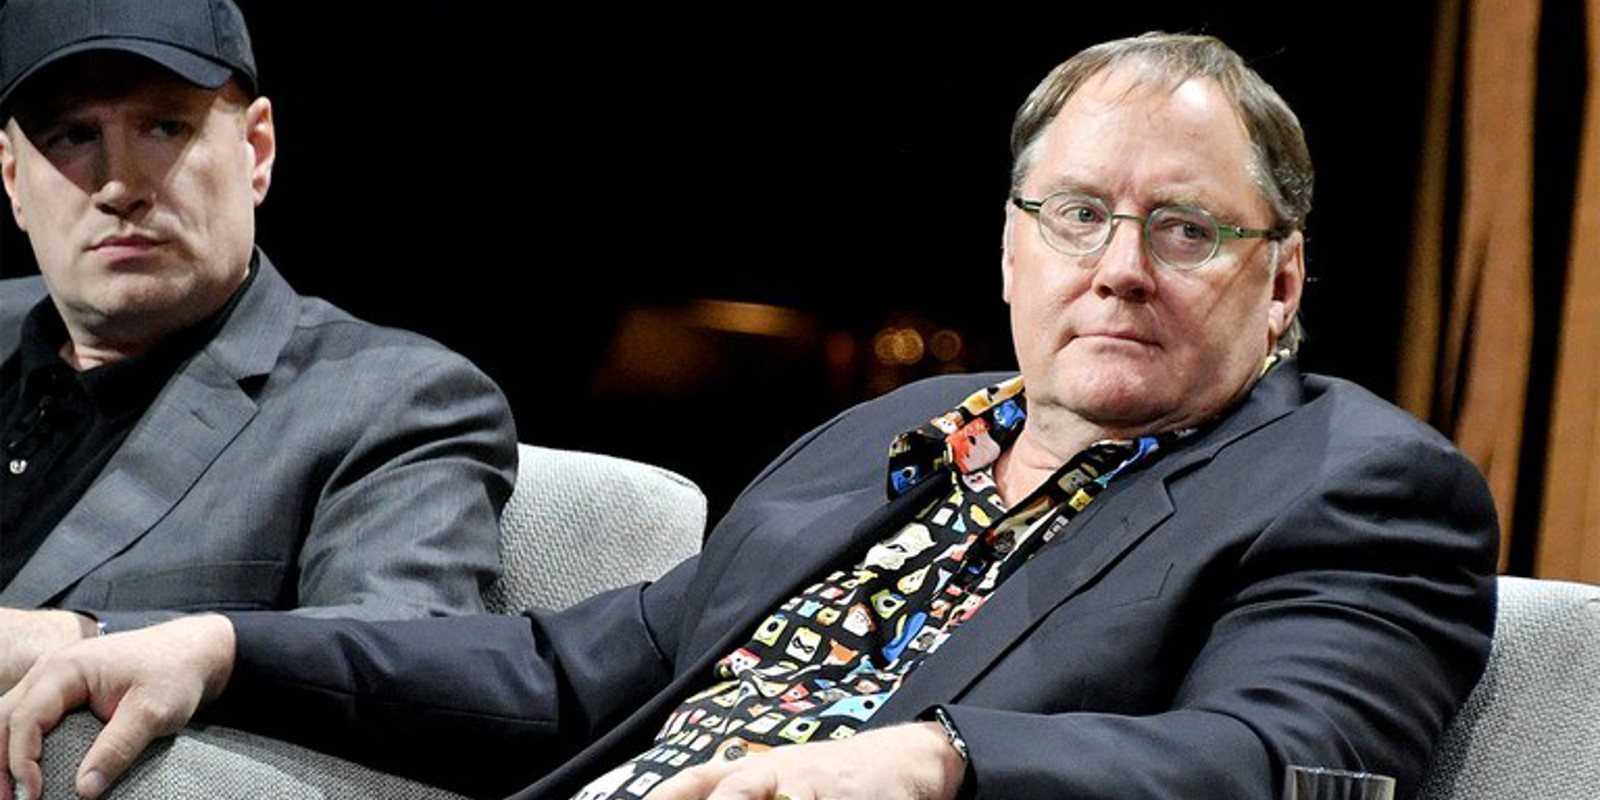 Disney: John Lasseter abandonará la compañía a finales de año por "comportamiento inapropiado"